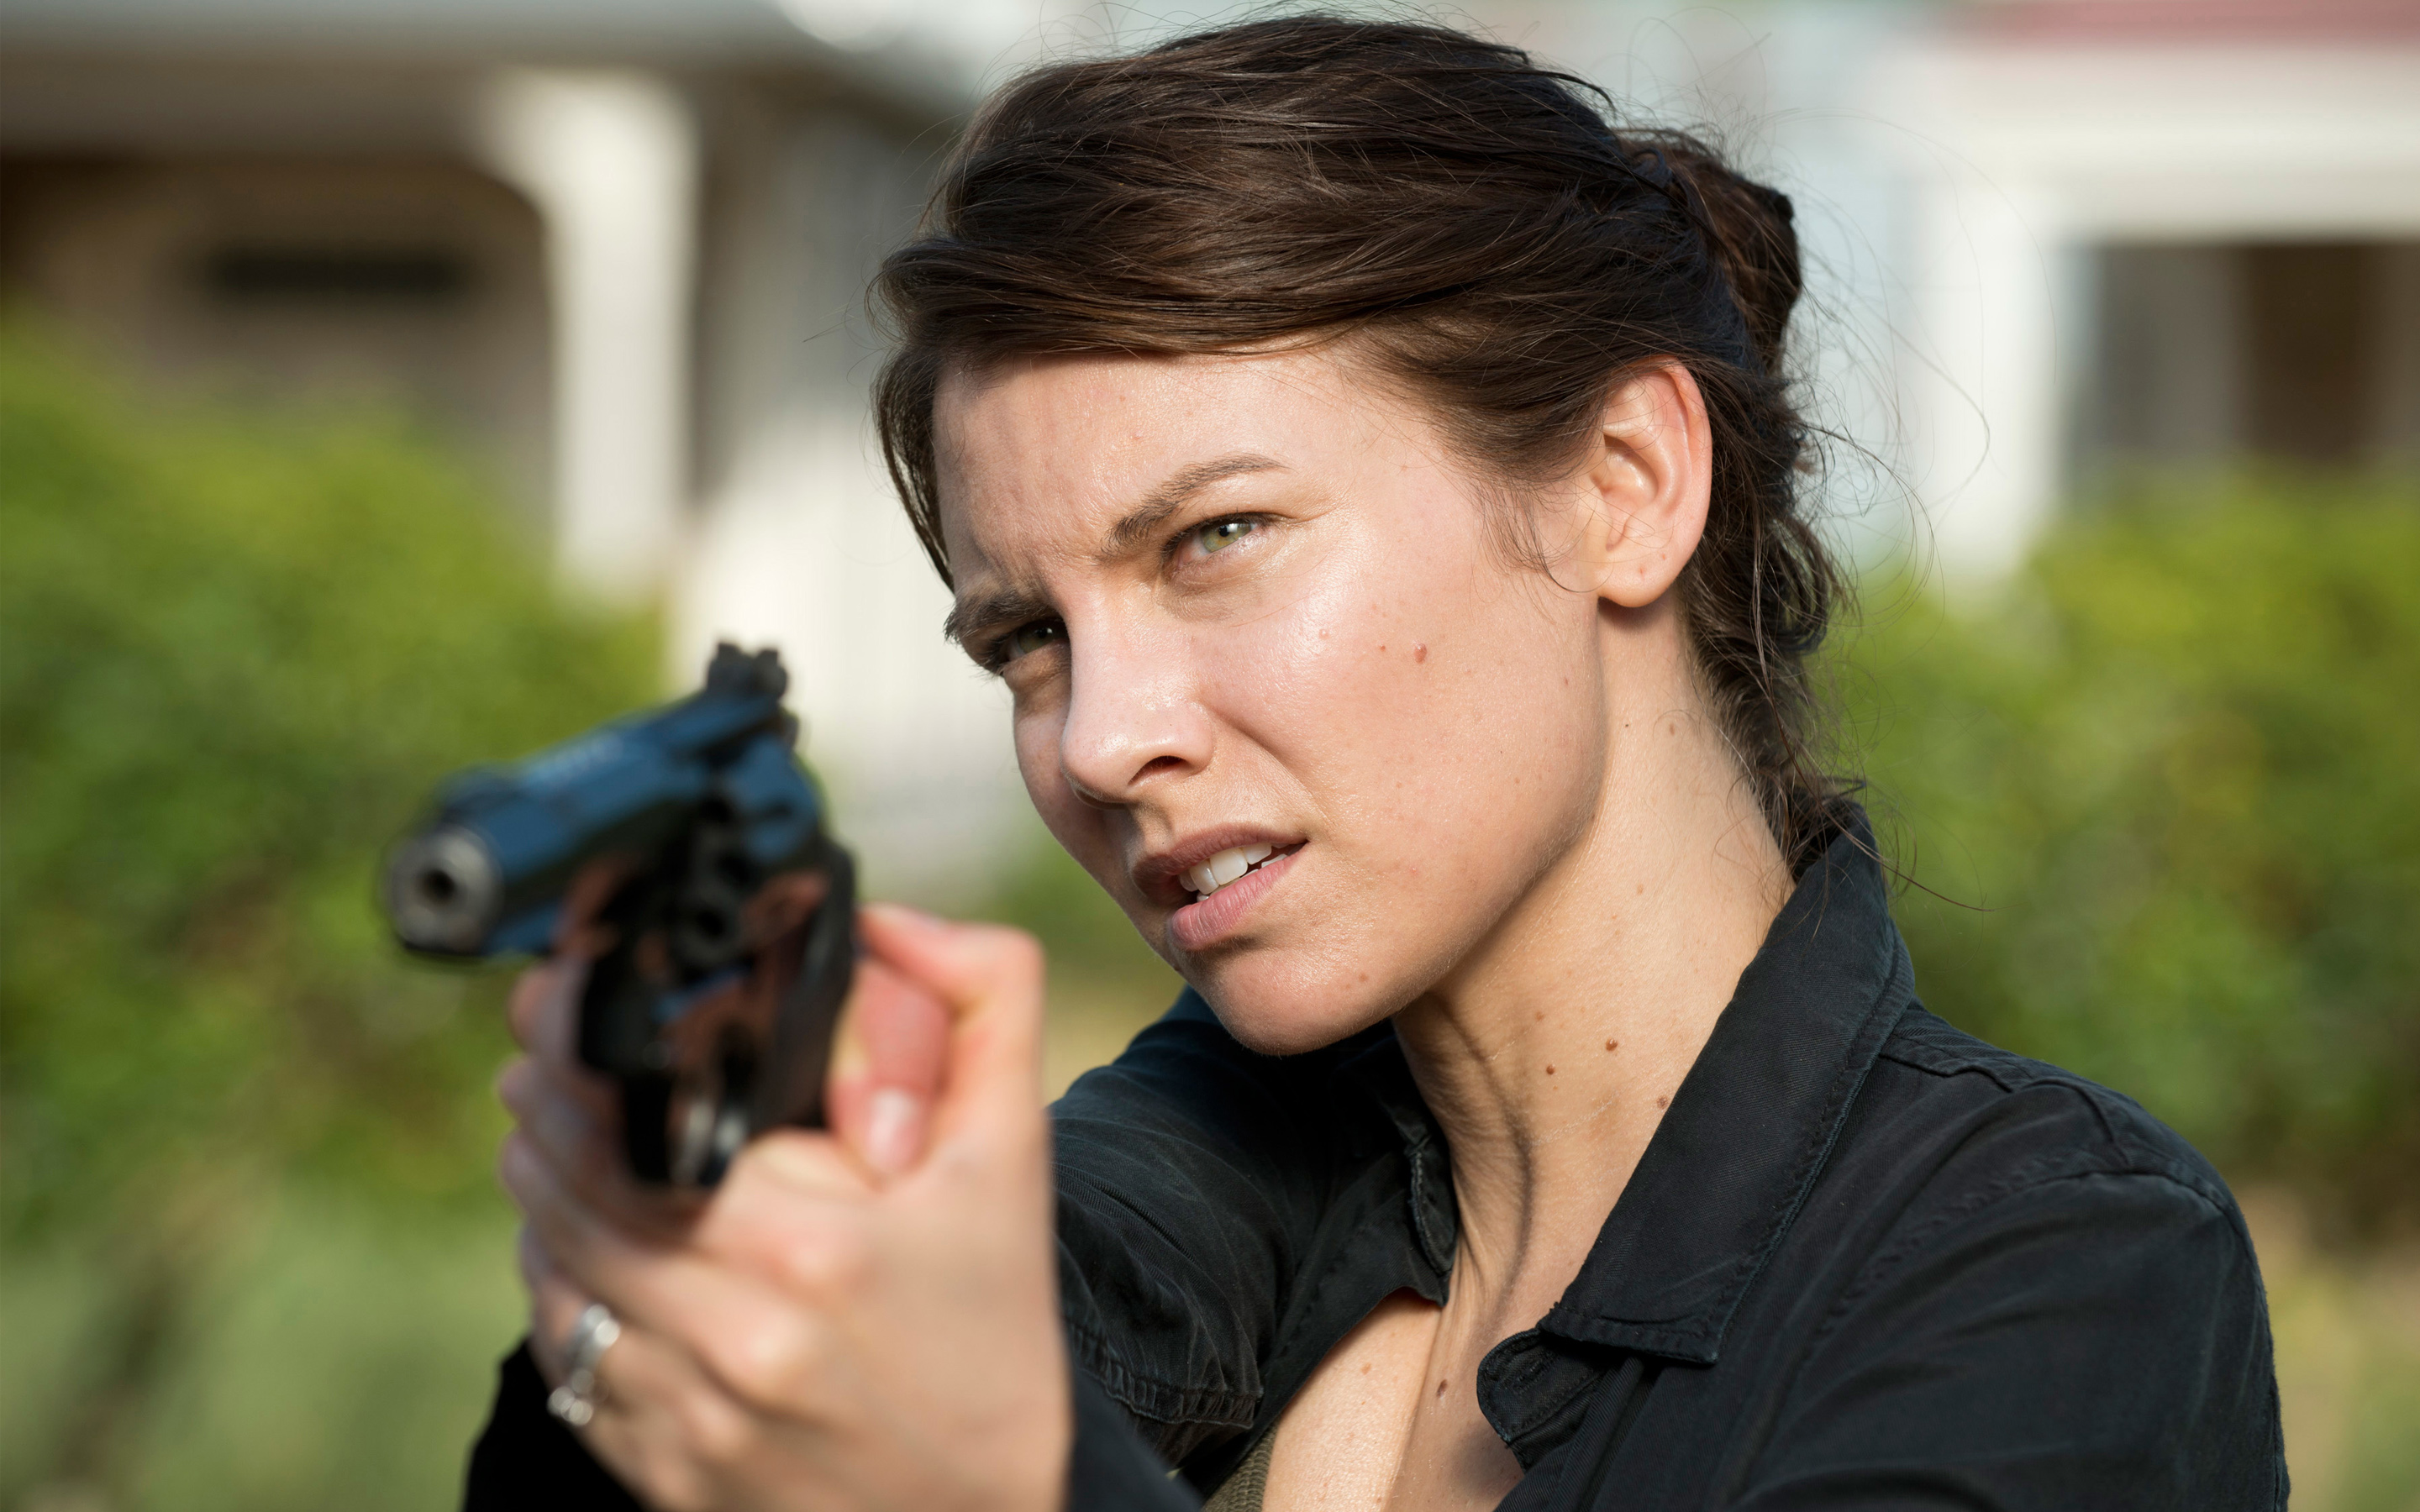 Maggie The Walking Dead Season